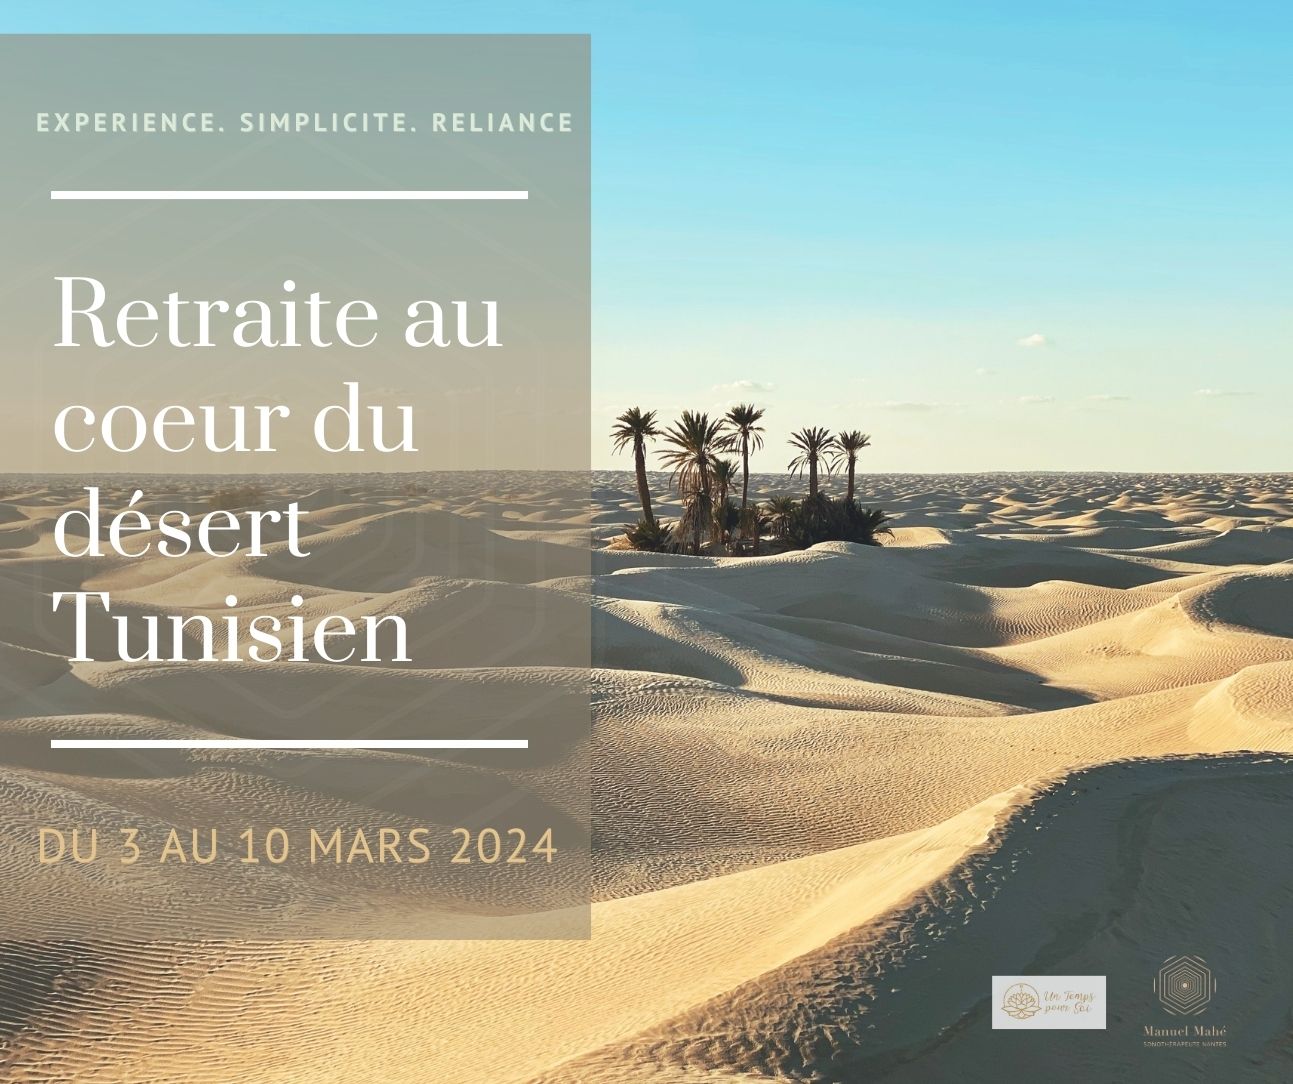 RETRAITE DESERT DE TUNISIE